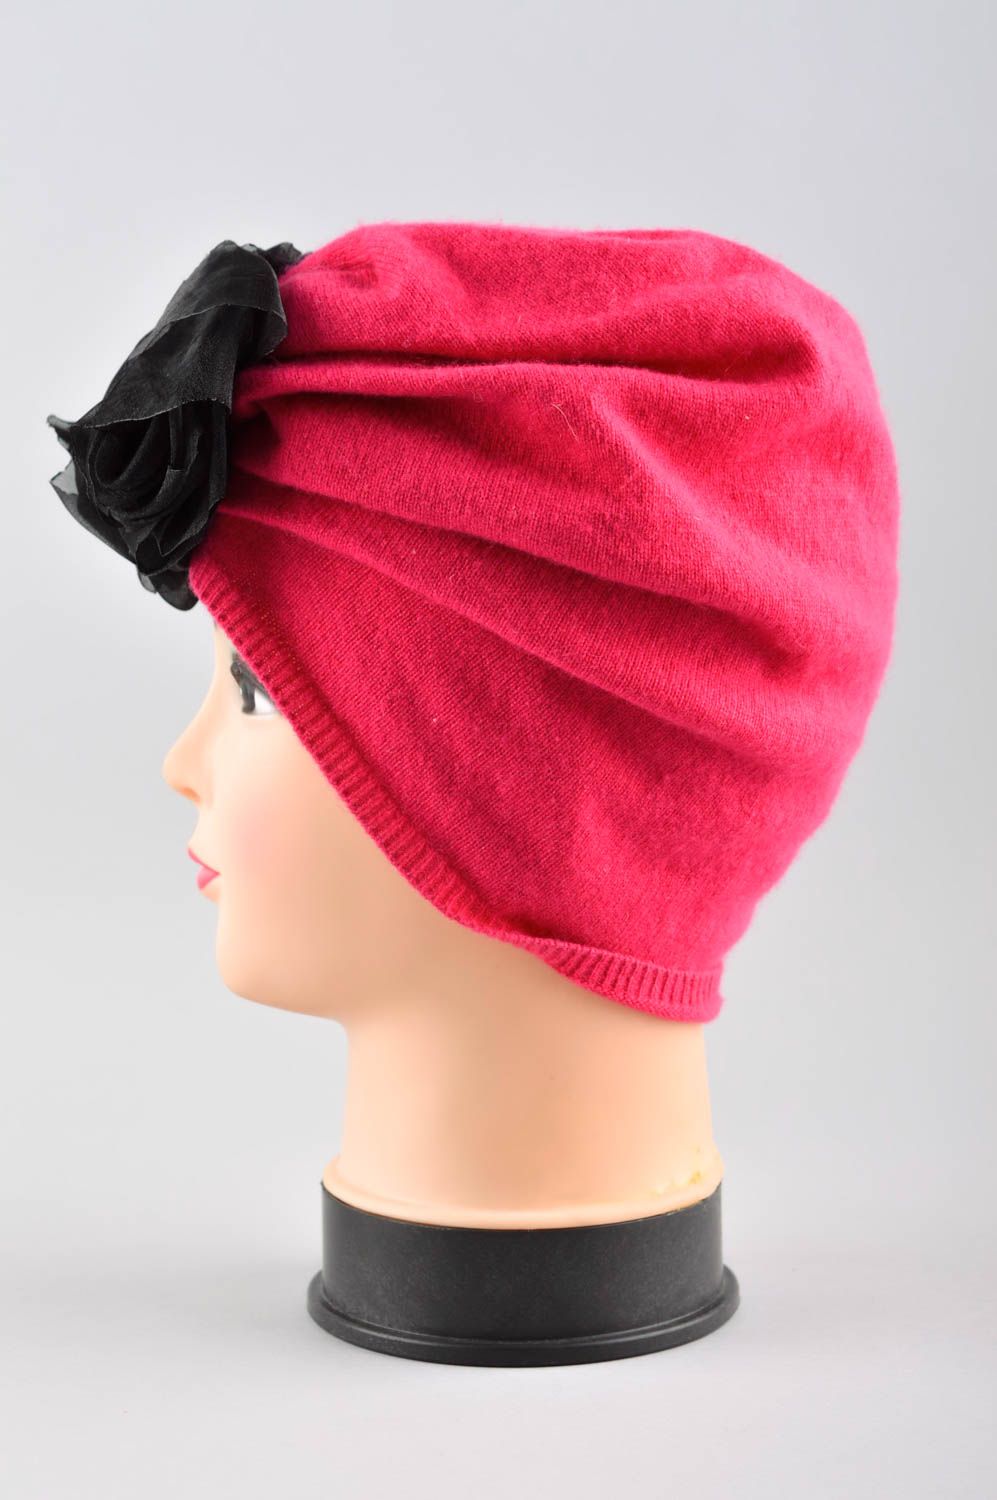 Зимняя женская шапка ручной работы головной убор зимняя шапка авторская розовая фото 2